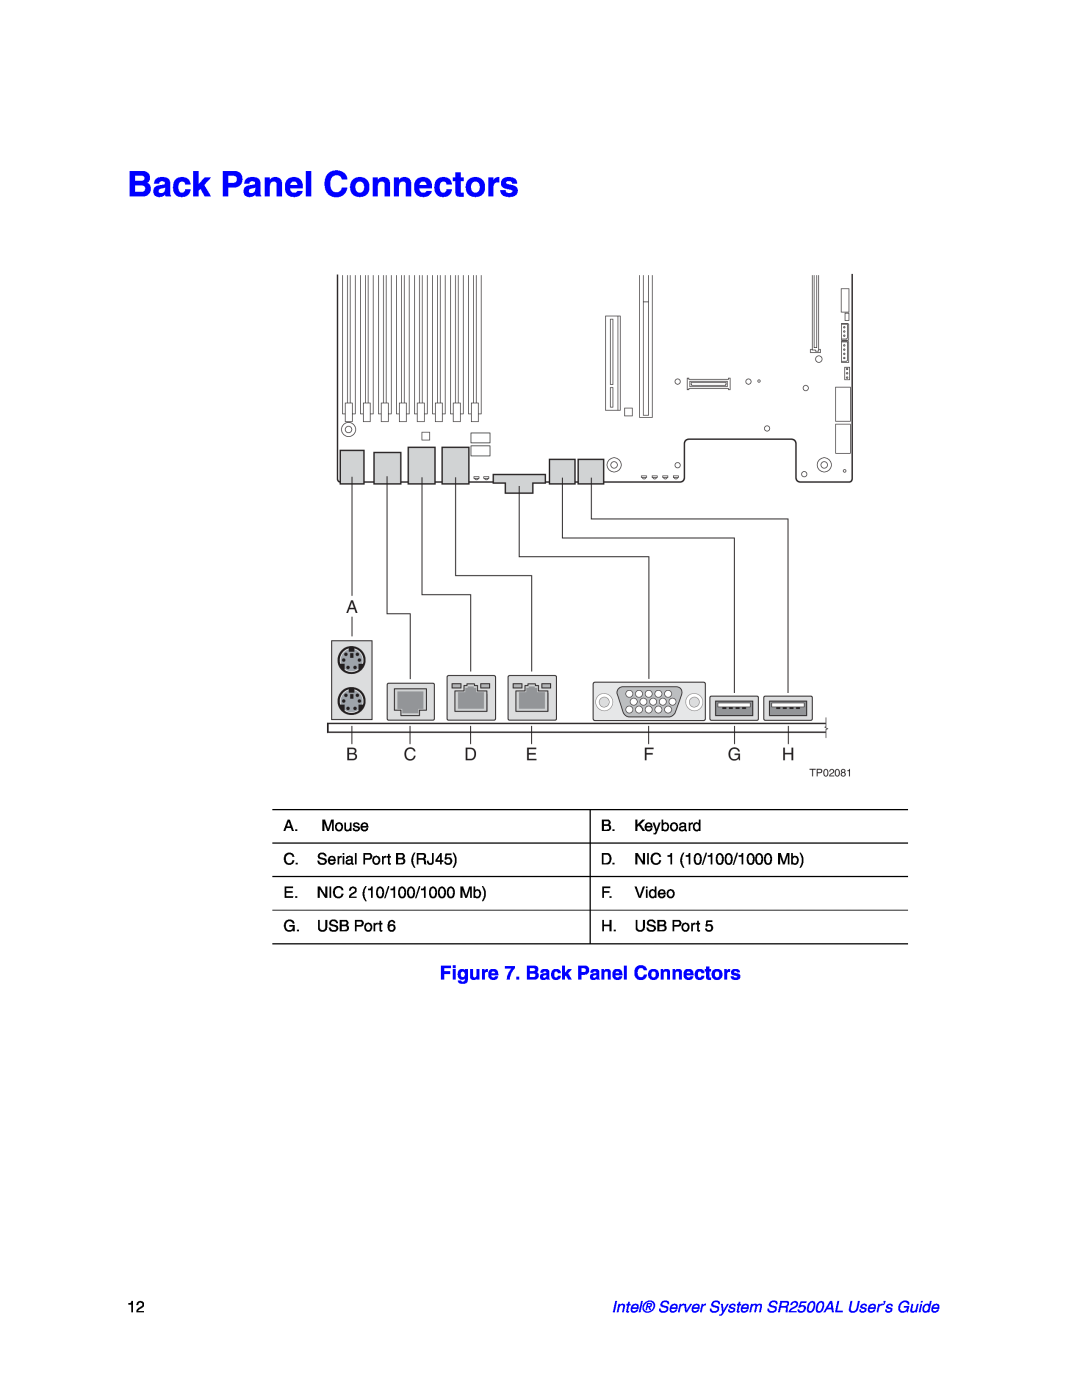 Intel SR2500AL manual Back Panel Connectors 